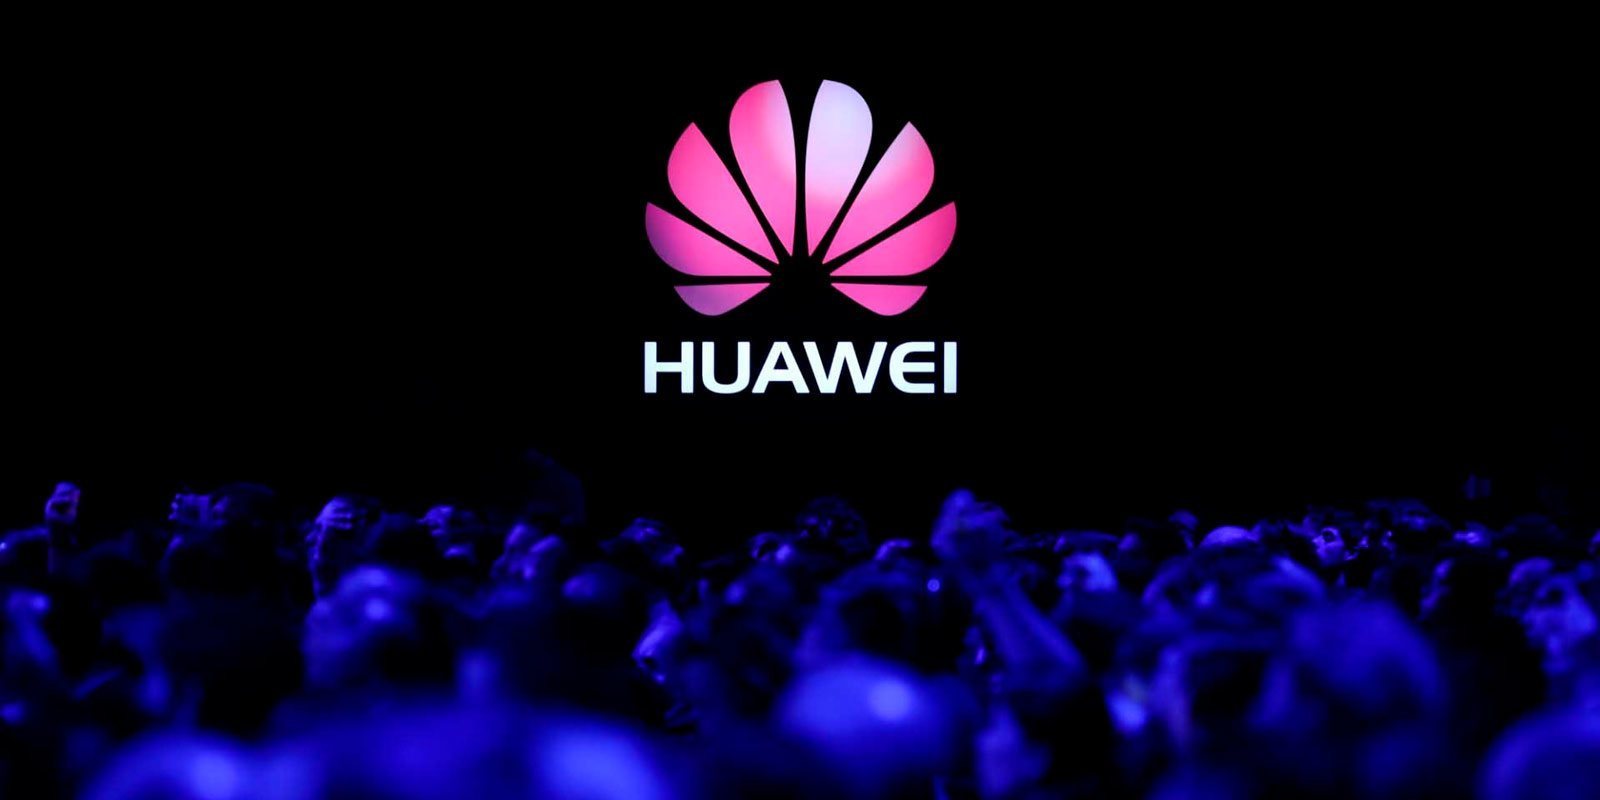 Google rompe relaciones con Huawei y deja a sus dispositivos sin apoyo